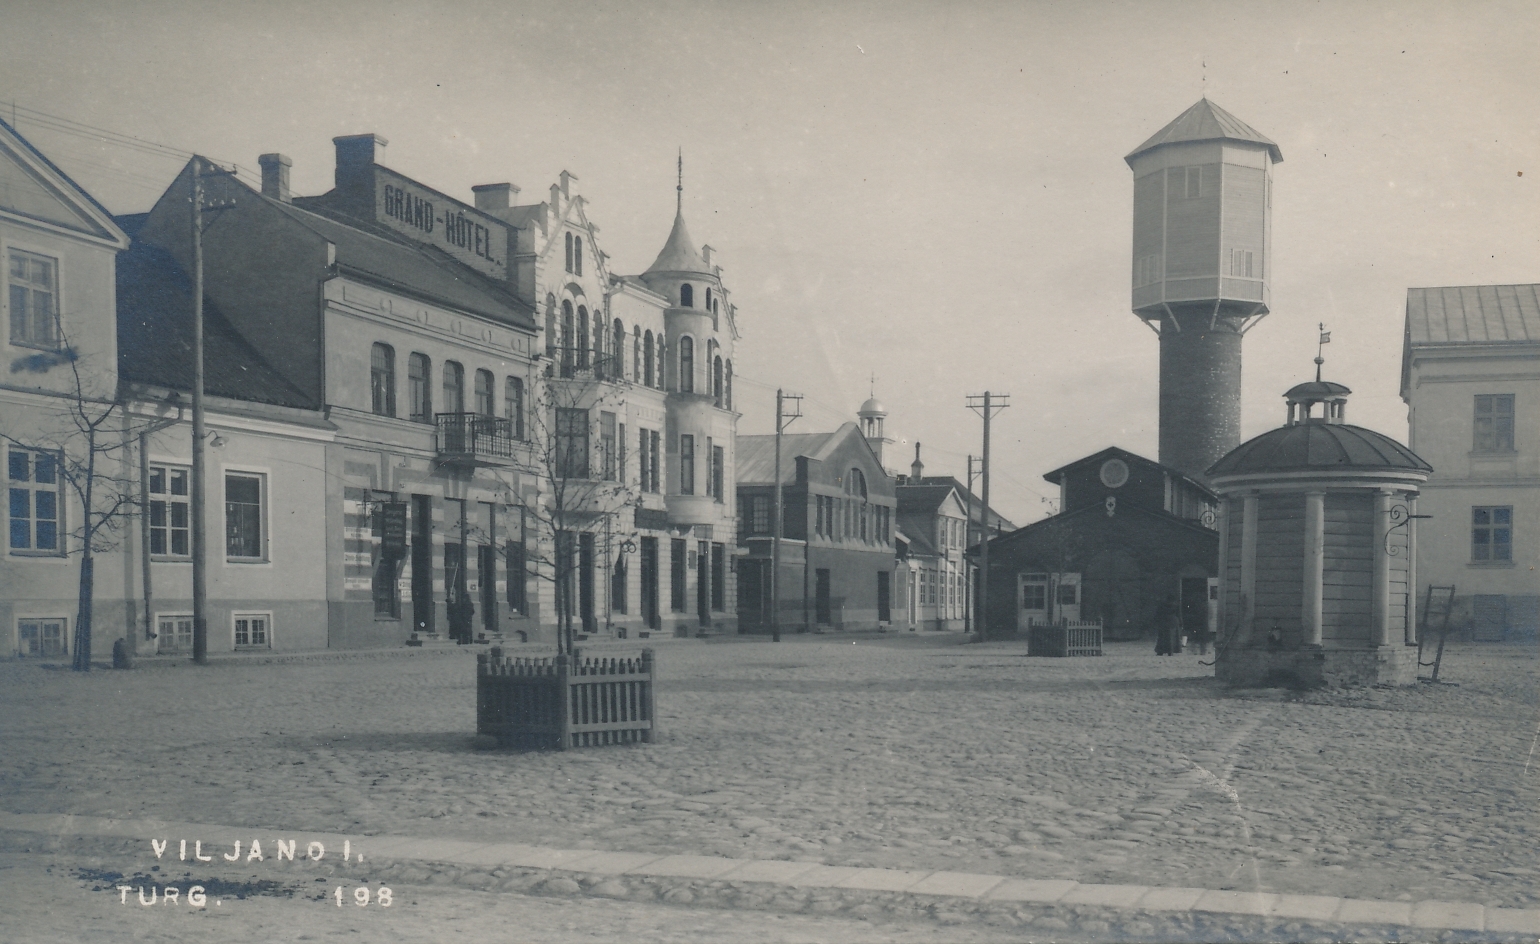 foto, Viljandi, turuplats, apteek, hotell, veetorn, u 1915, foto J. Riet